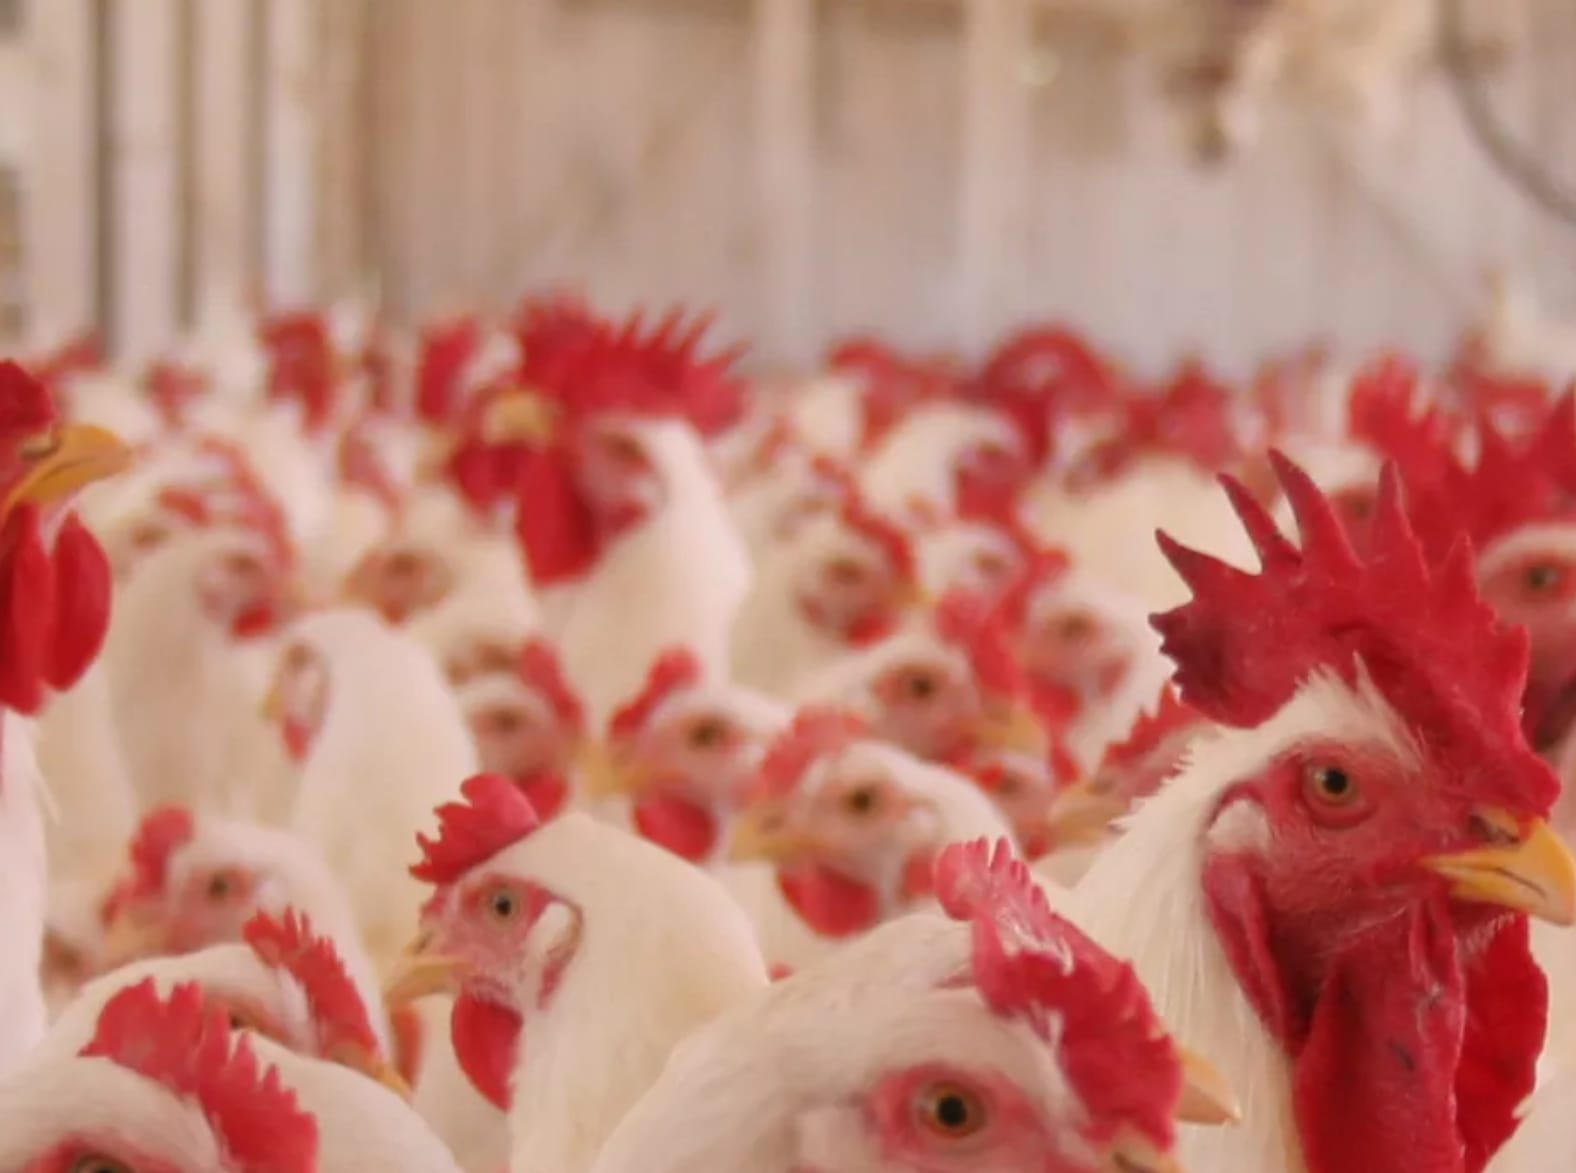 Exportações de carne de frango alcançam 418,1 mil toneladas em março